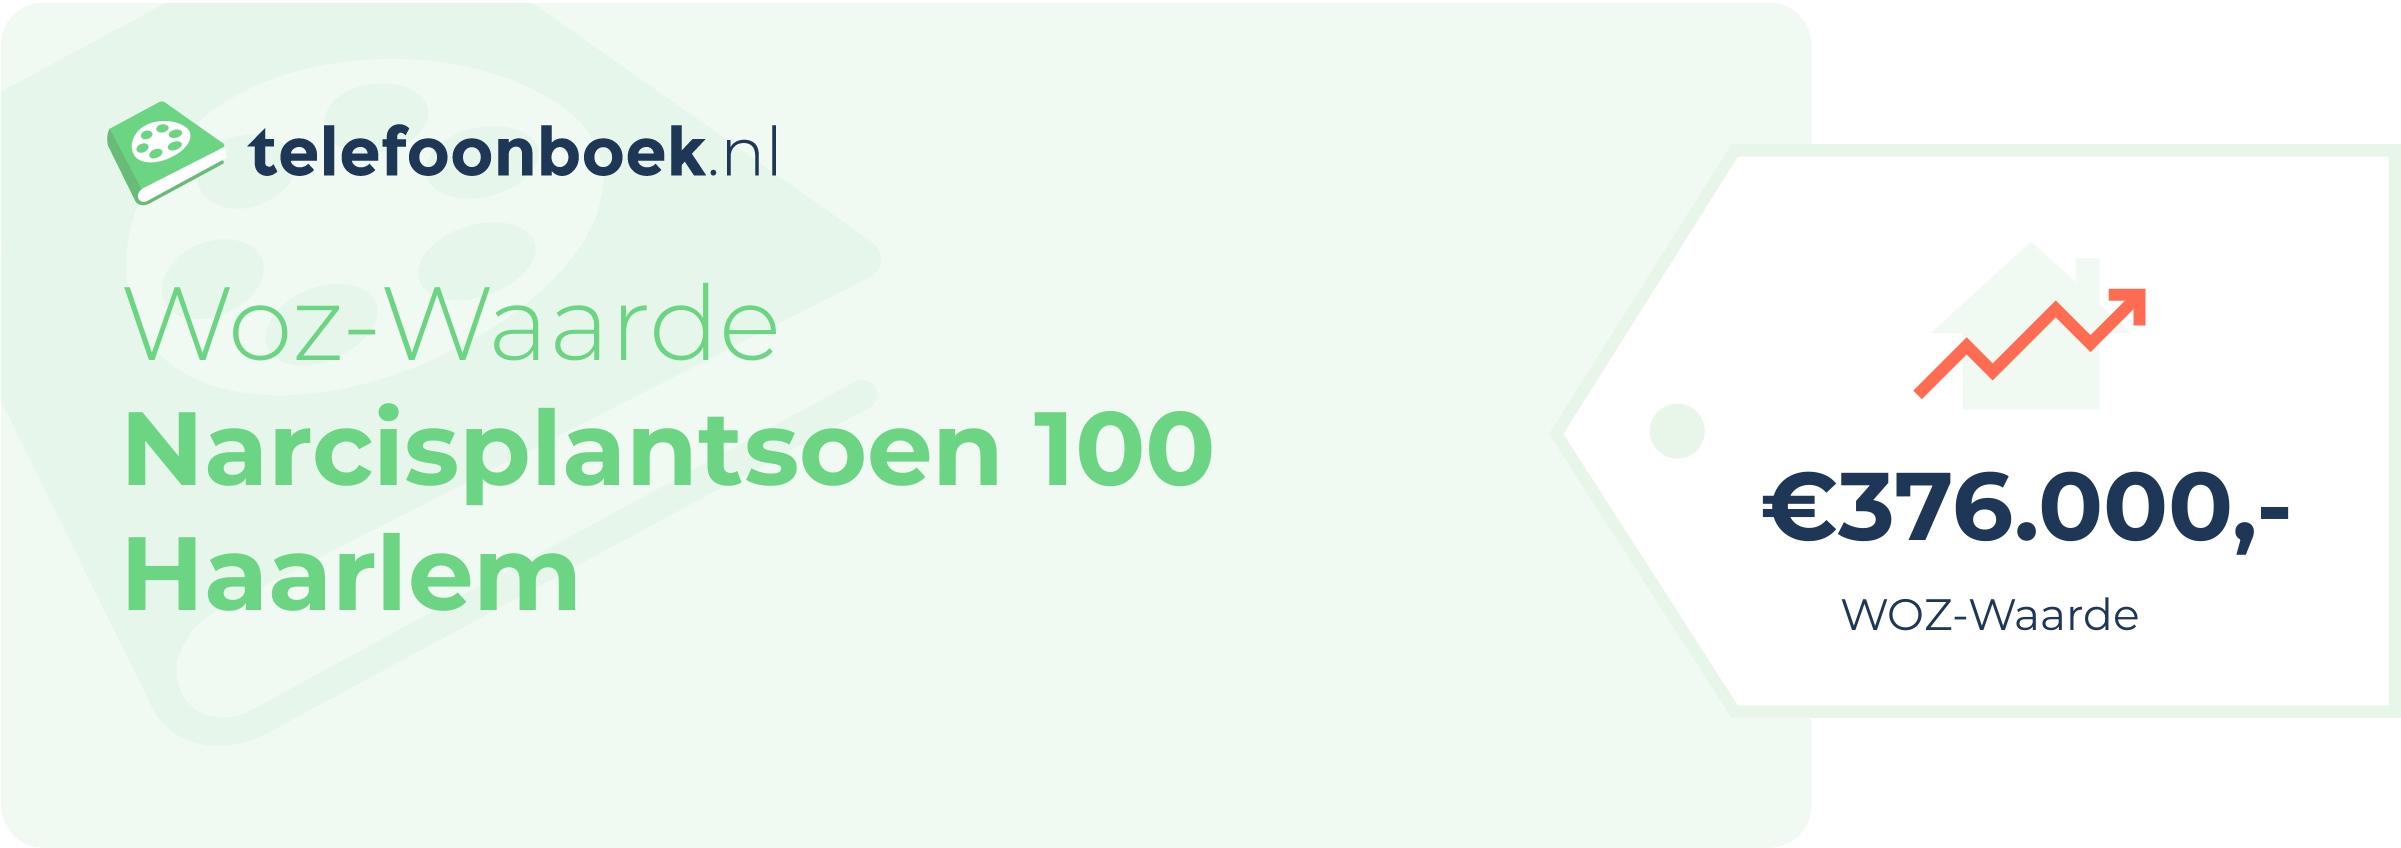 WOZ-waarde Narcisplantsoen 100 Haarlem